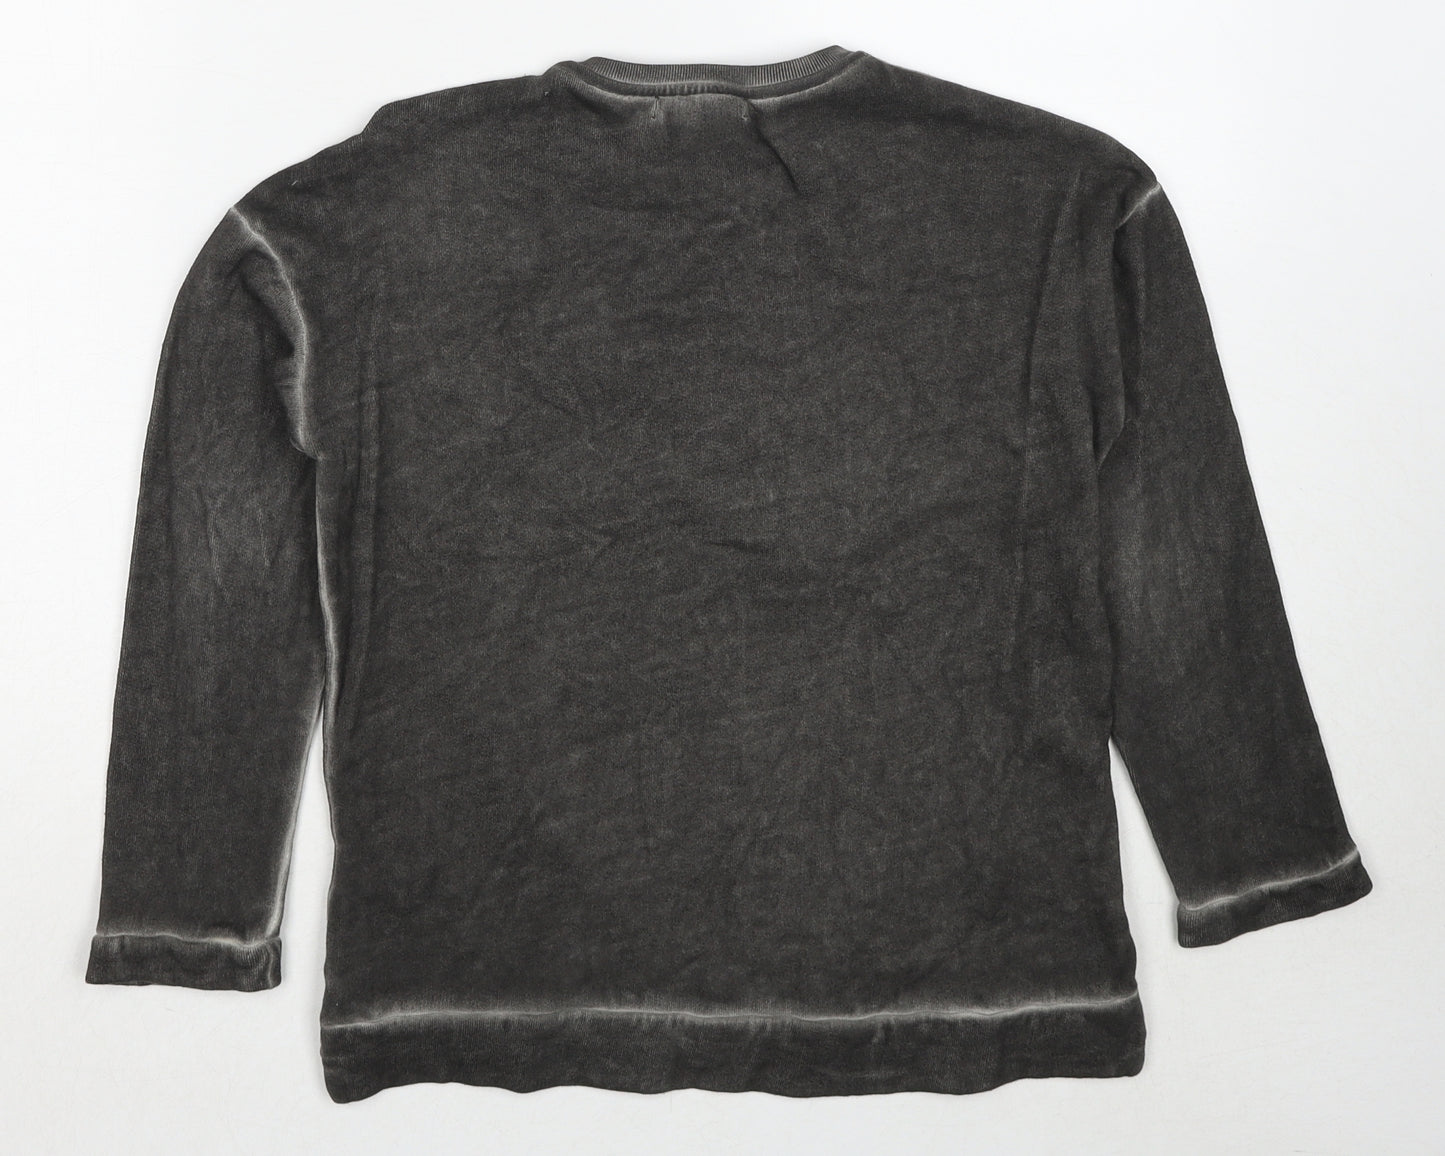 Zara Girls Grey Cotton Pullover Sweatshirt Size 8 Years Pullover